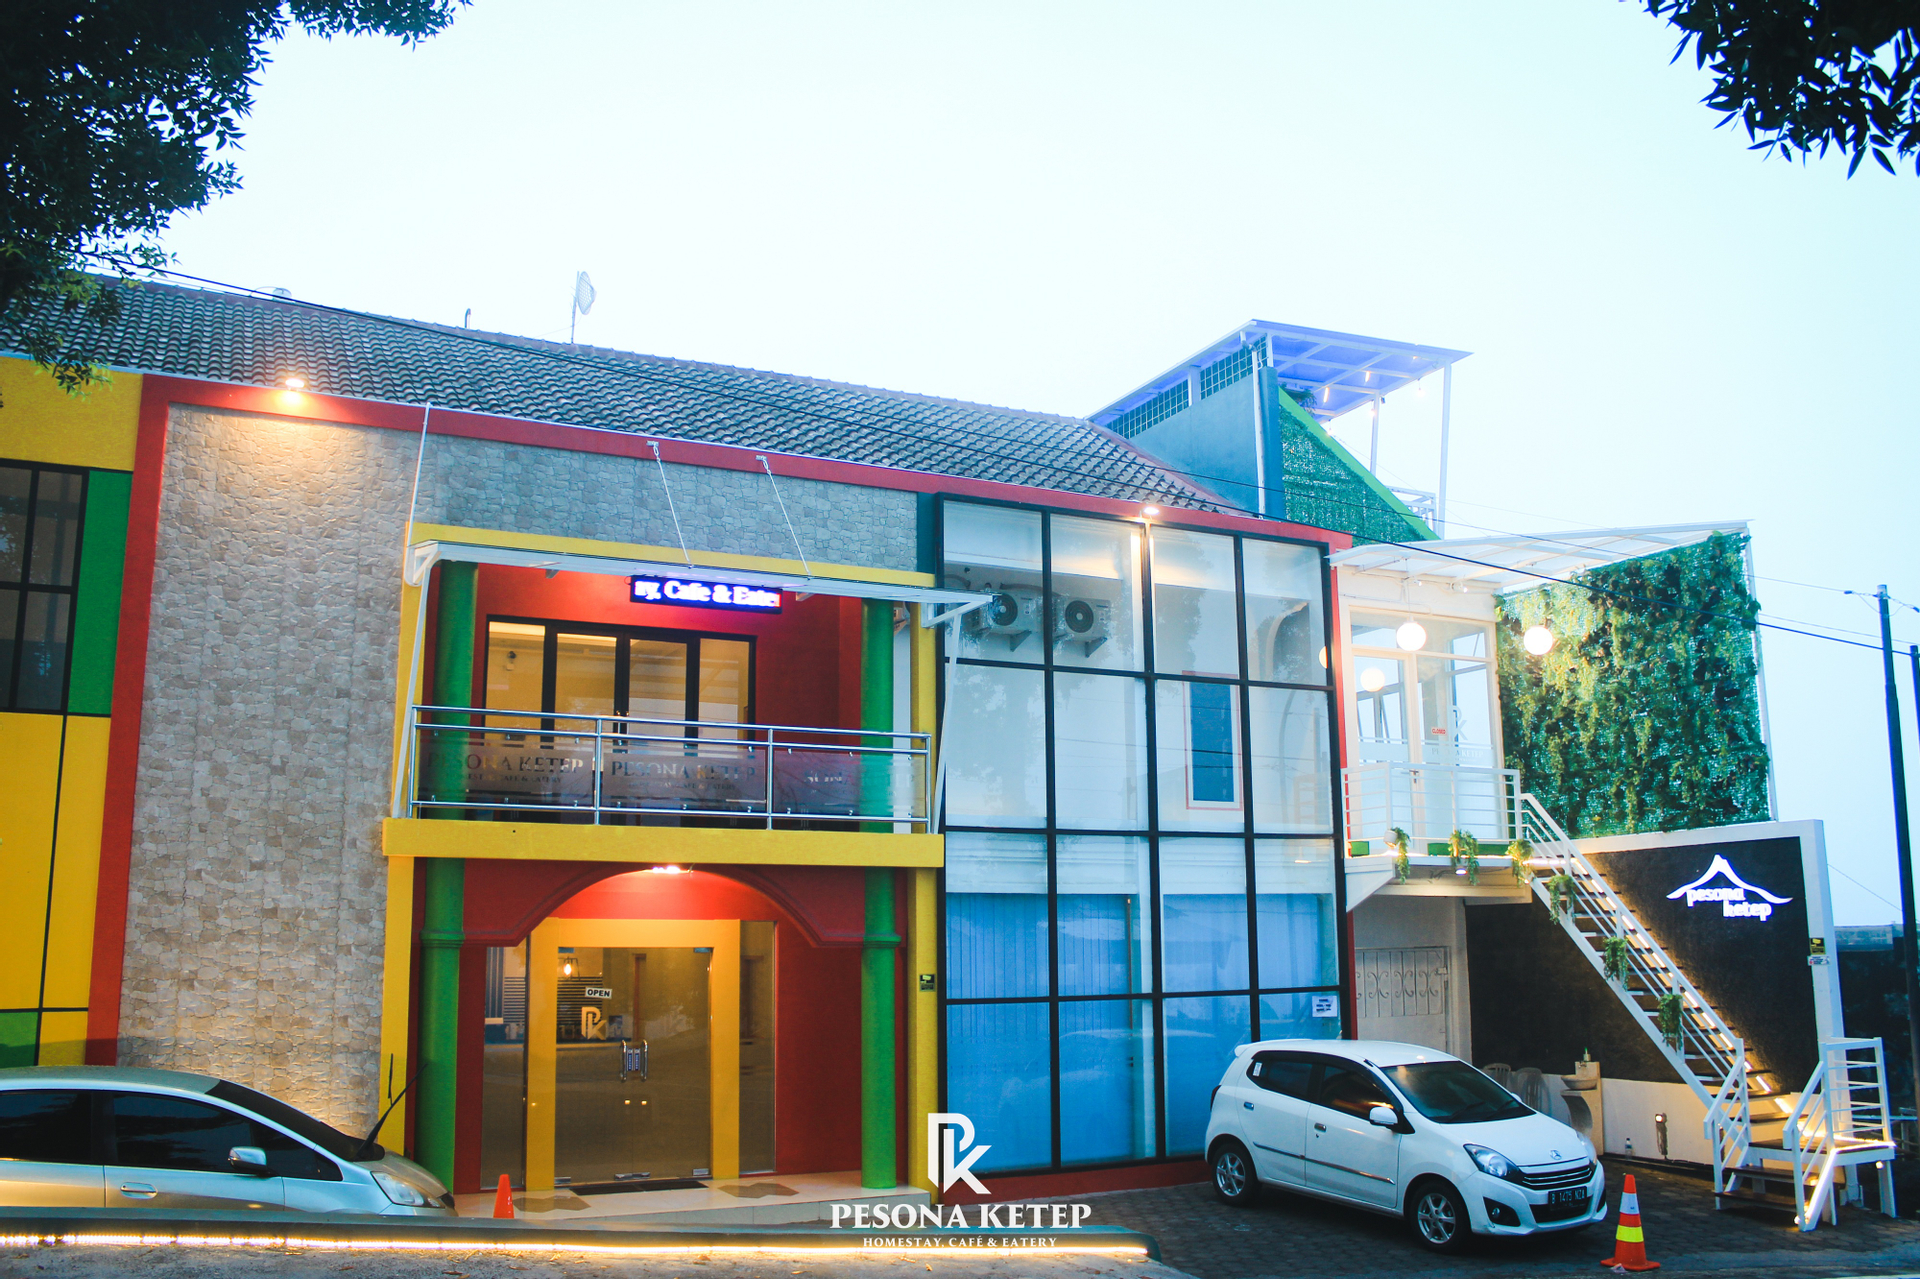 Exterior & Views 1, Pesona Ketep, Magelang